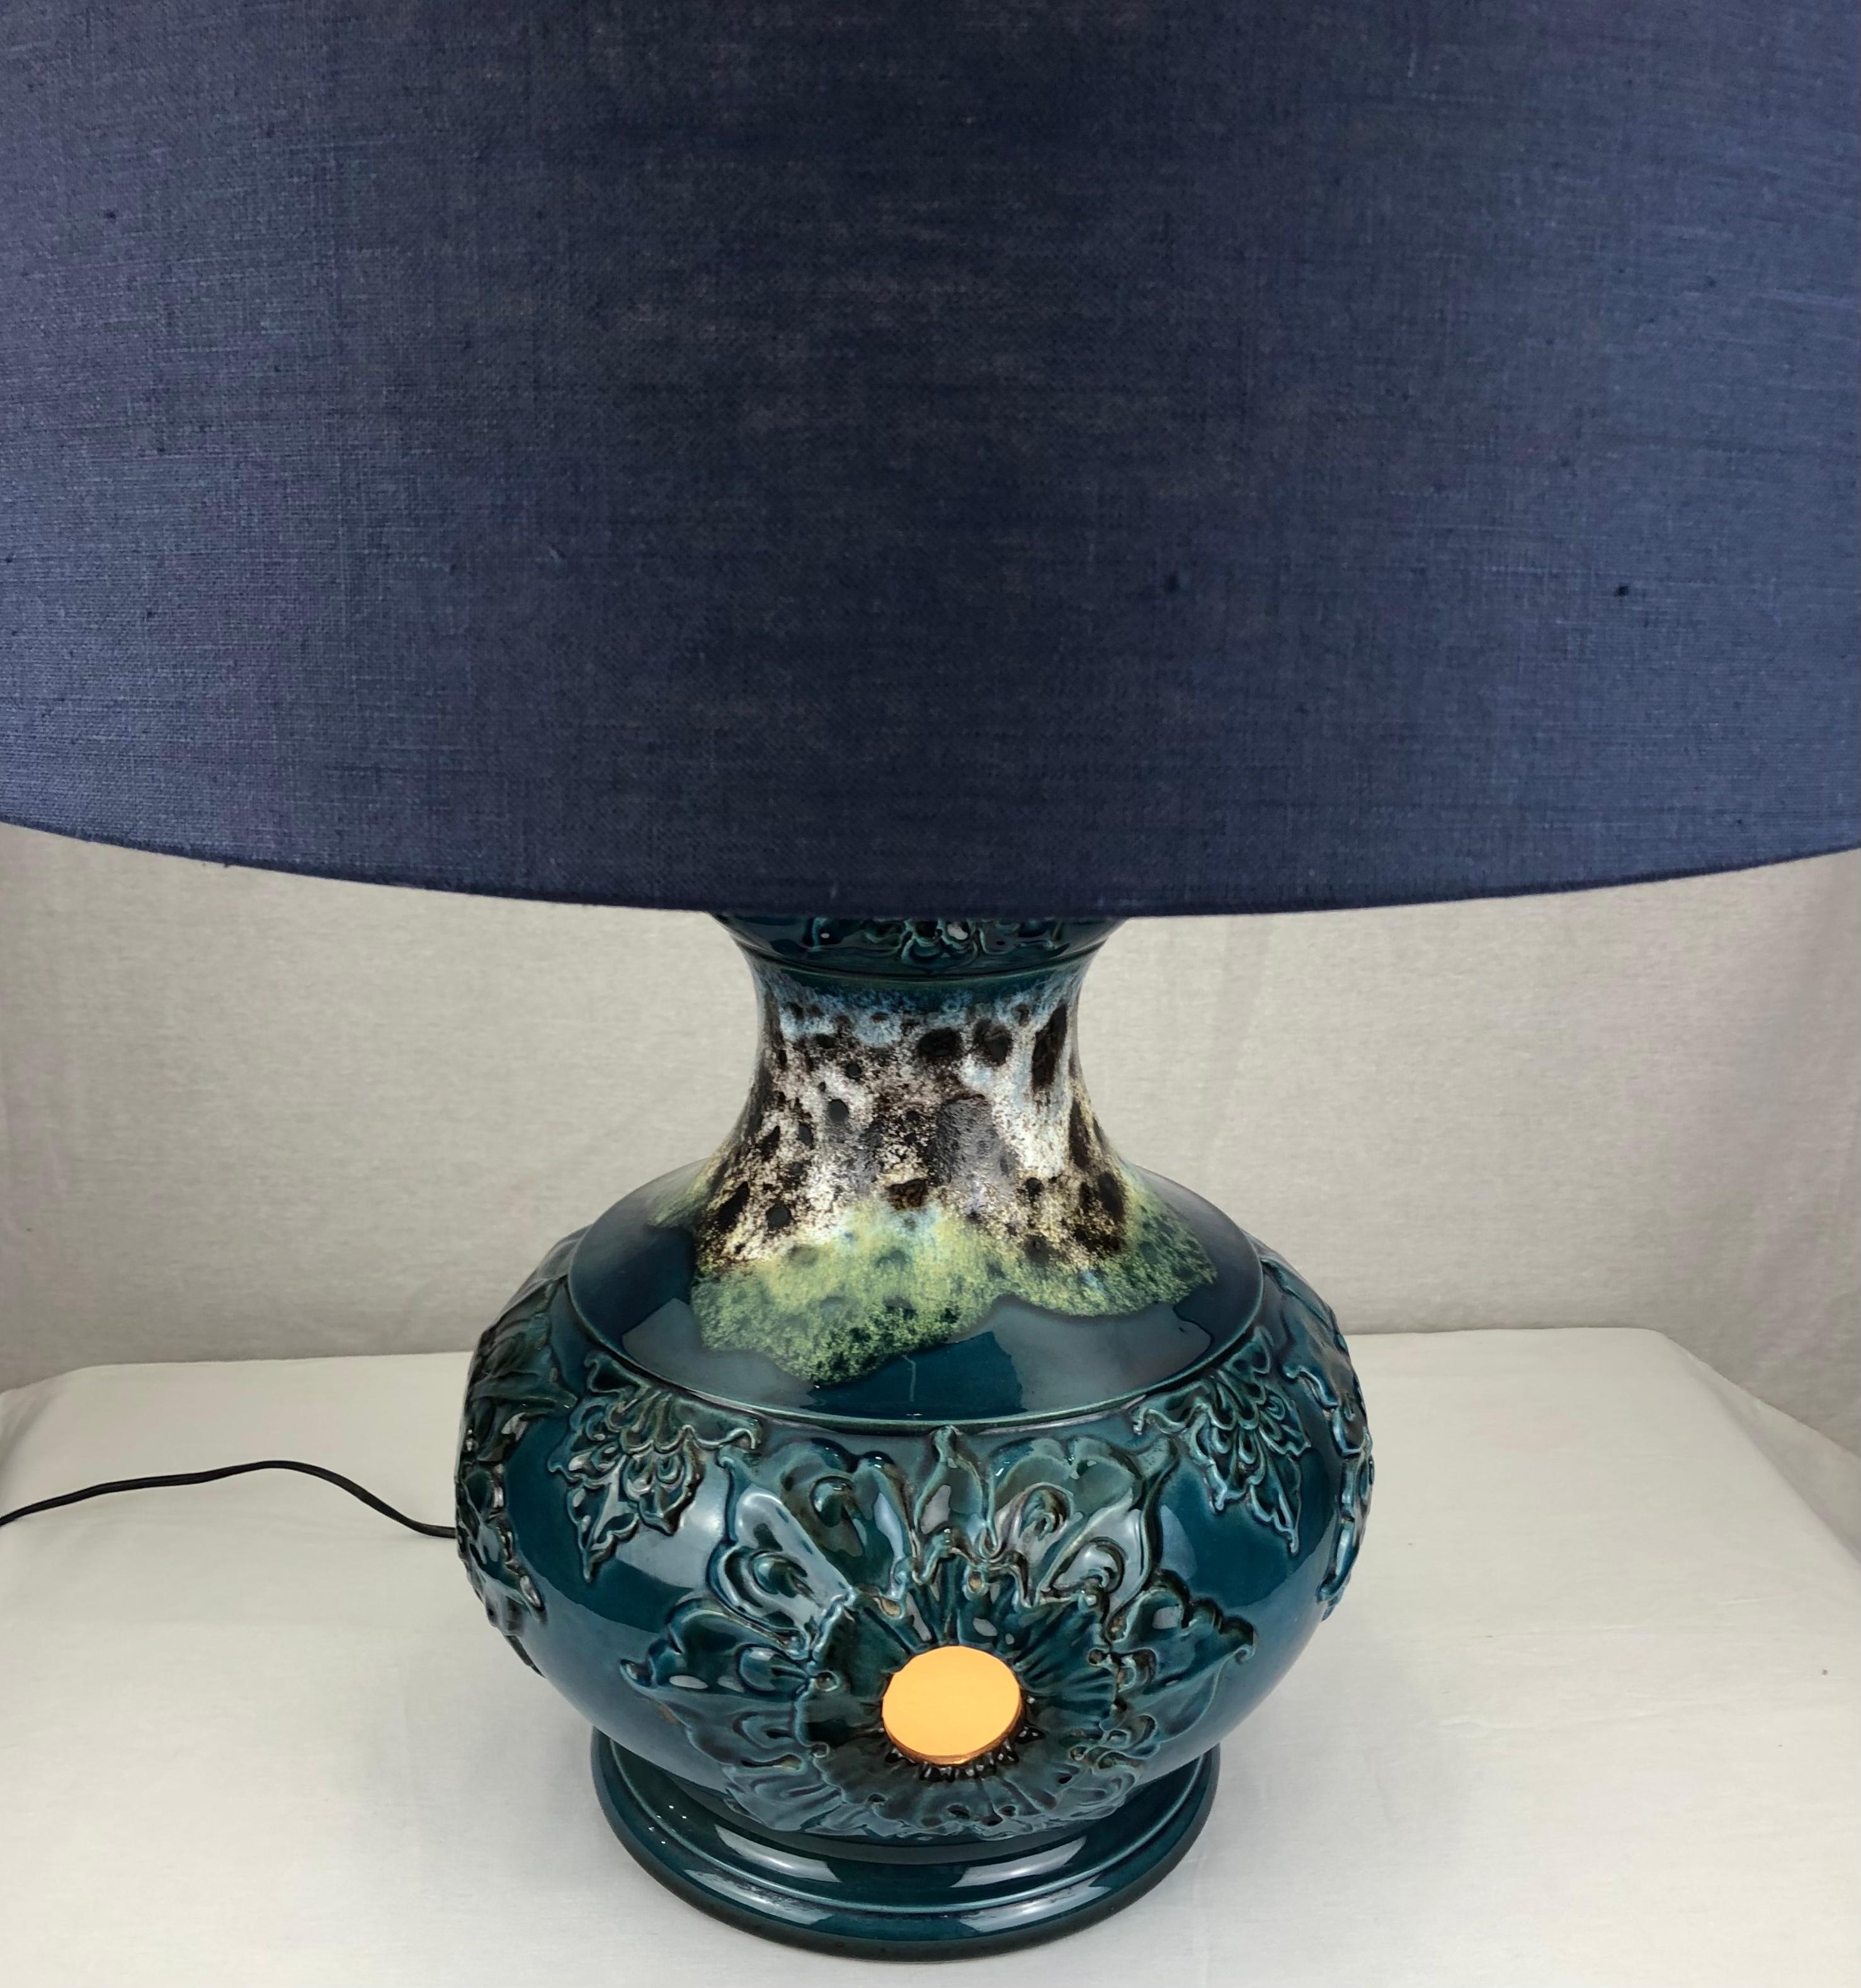 Lampe de table très décorative dans une étonnante gamme de couleurs bleues et beiges. Cette lampe de table en céramique de style moderne du milieu du siècle présente un travail sculptural remarquable et sera du plus bel effet dans n'importe quel